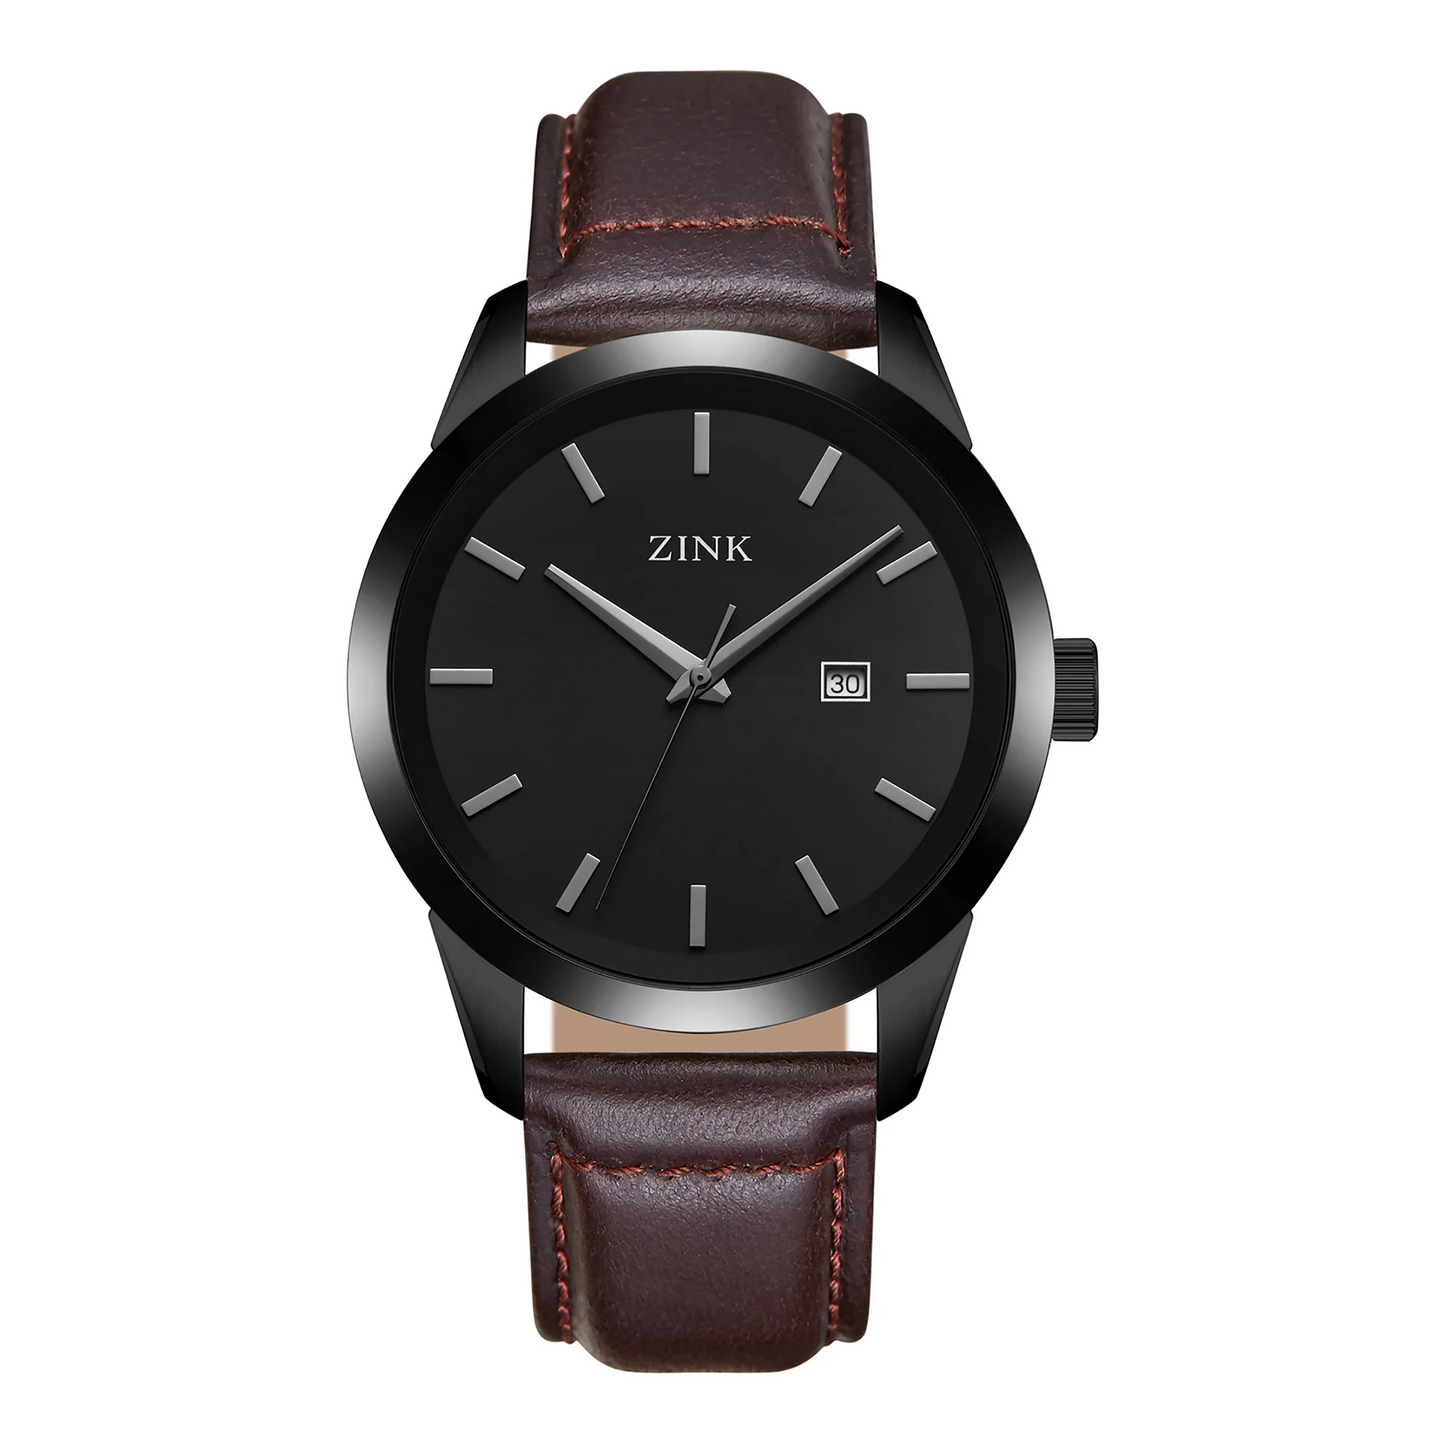 ZK133G1LS-216 ZINK Men's Watch